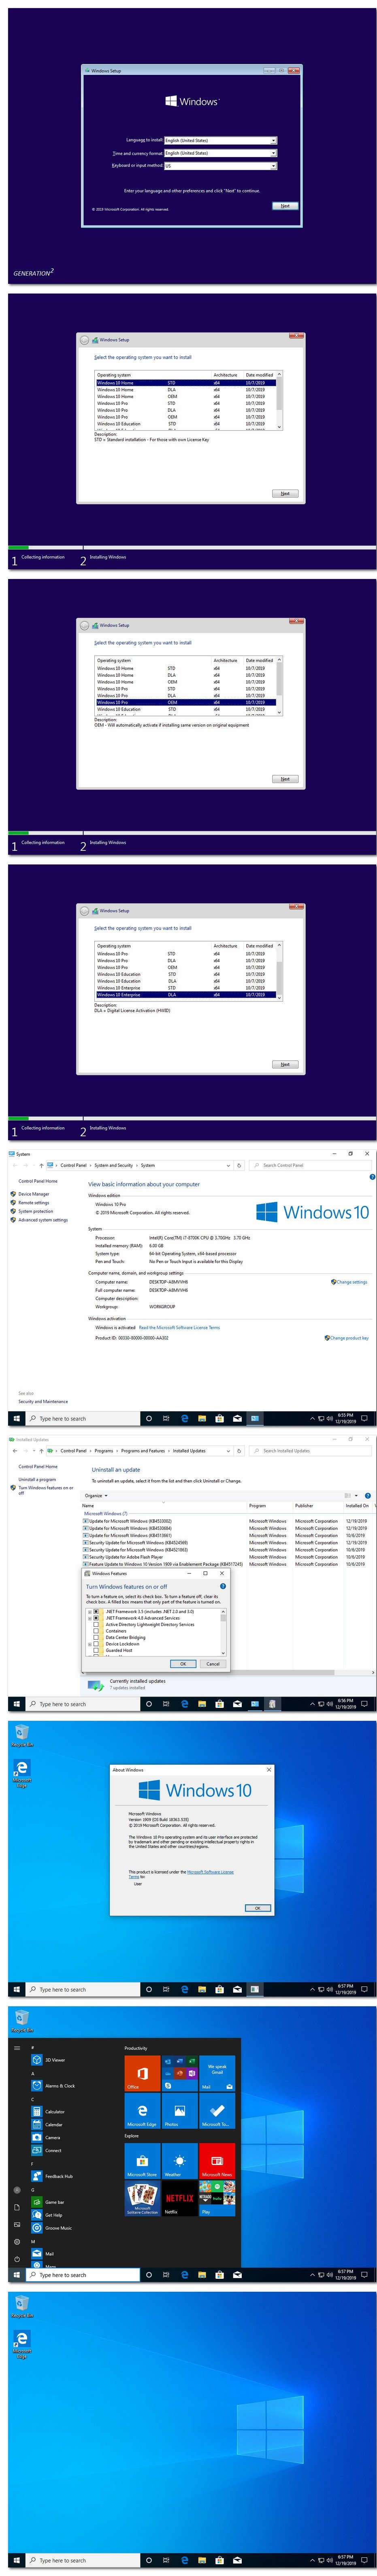 windows 10 enterprise activation key 2020